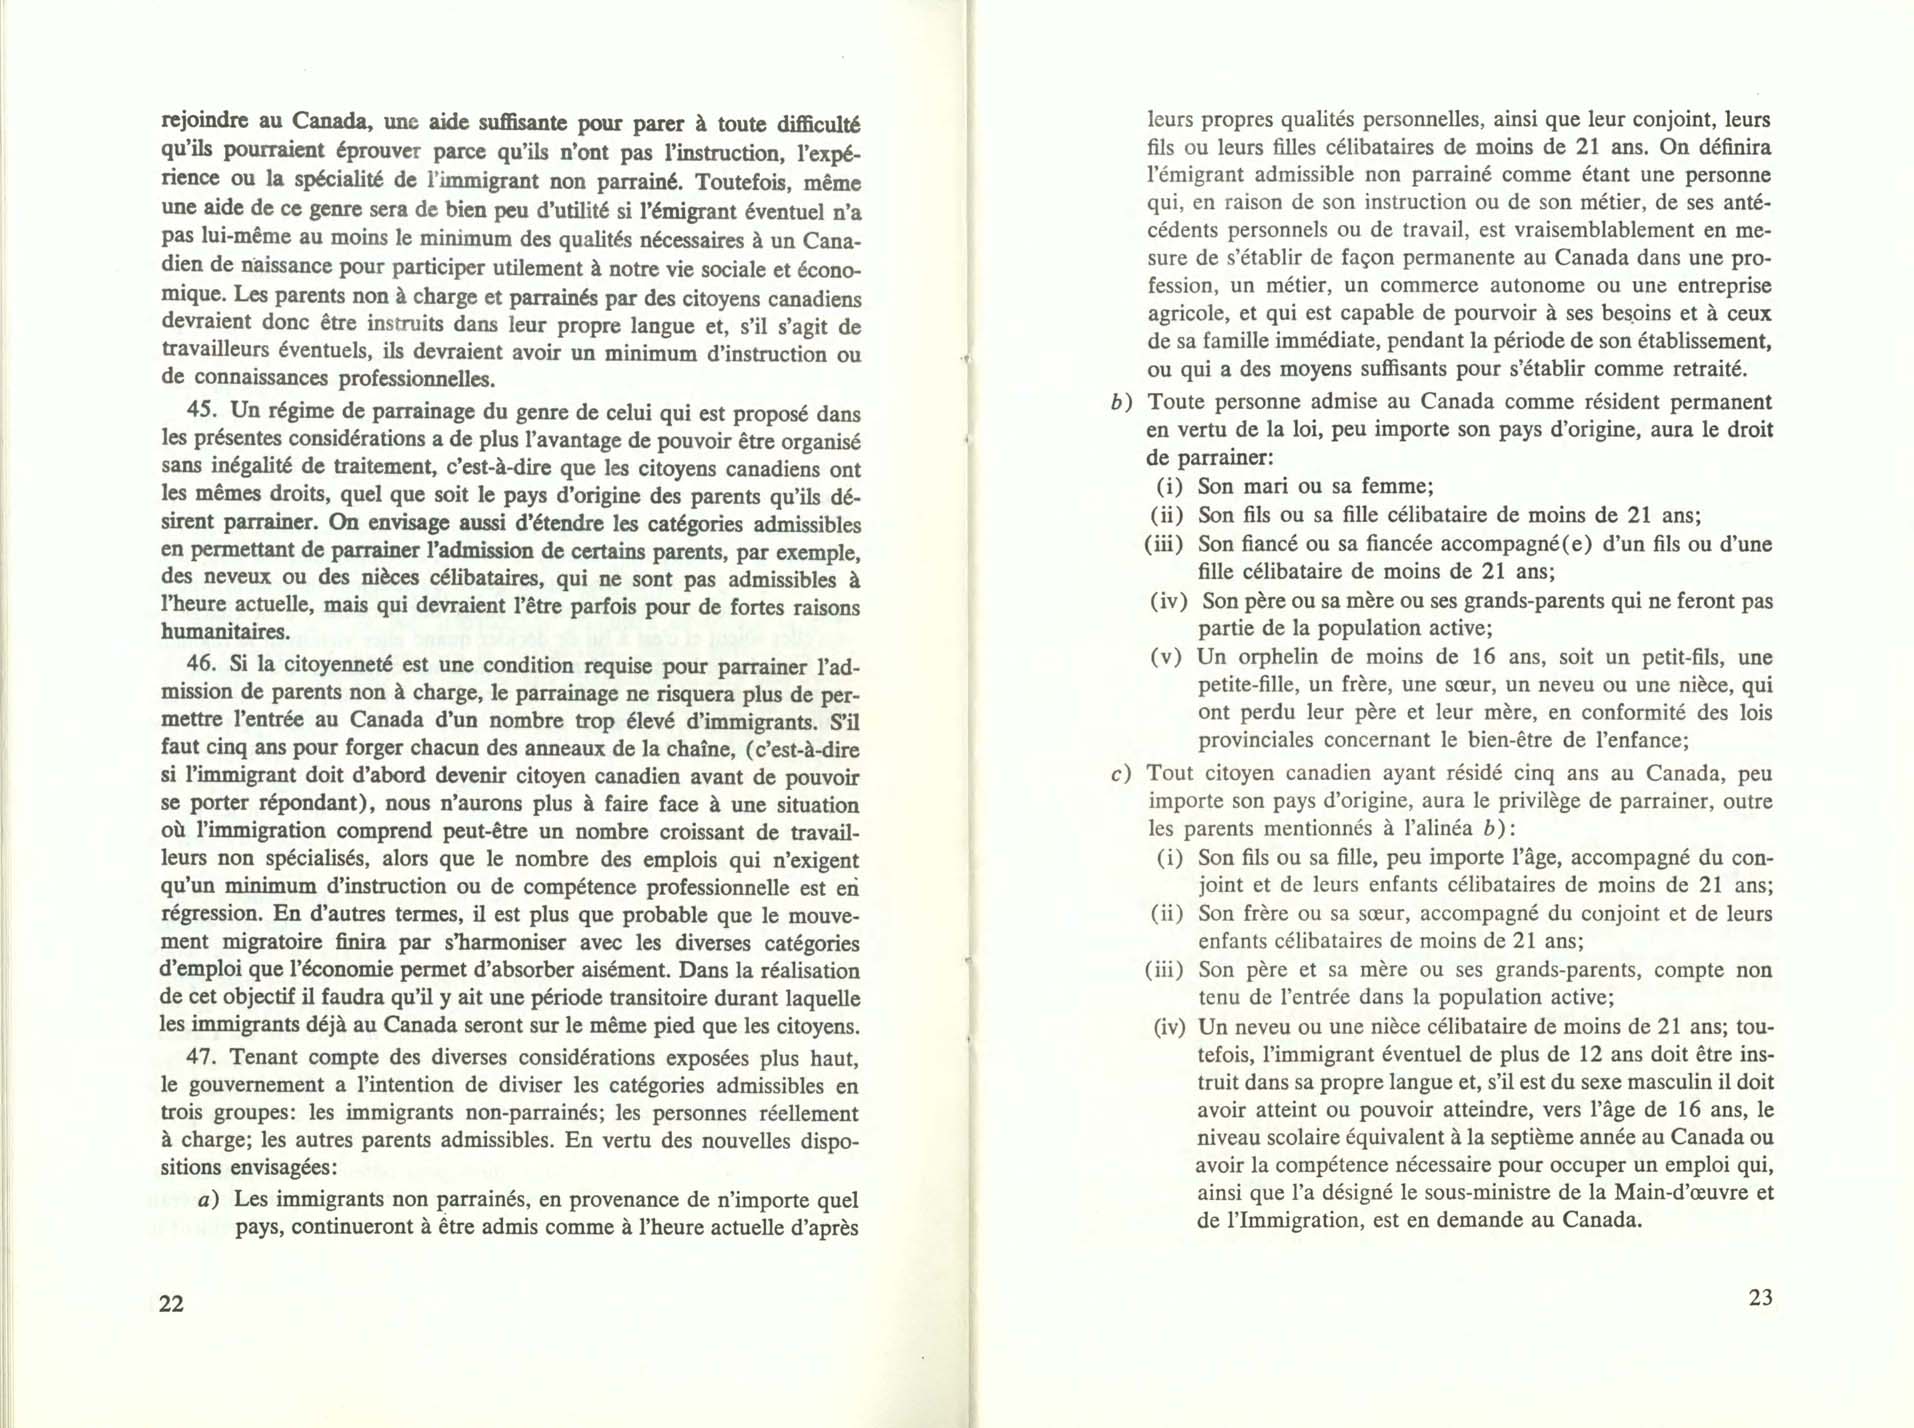 Page 22, 23 Livre Blanc sur l’immigration, 1966